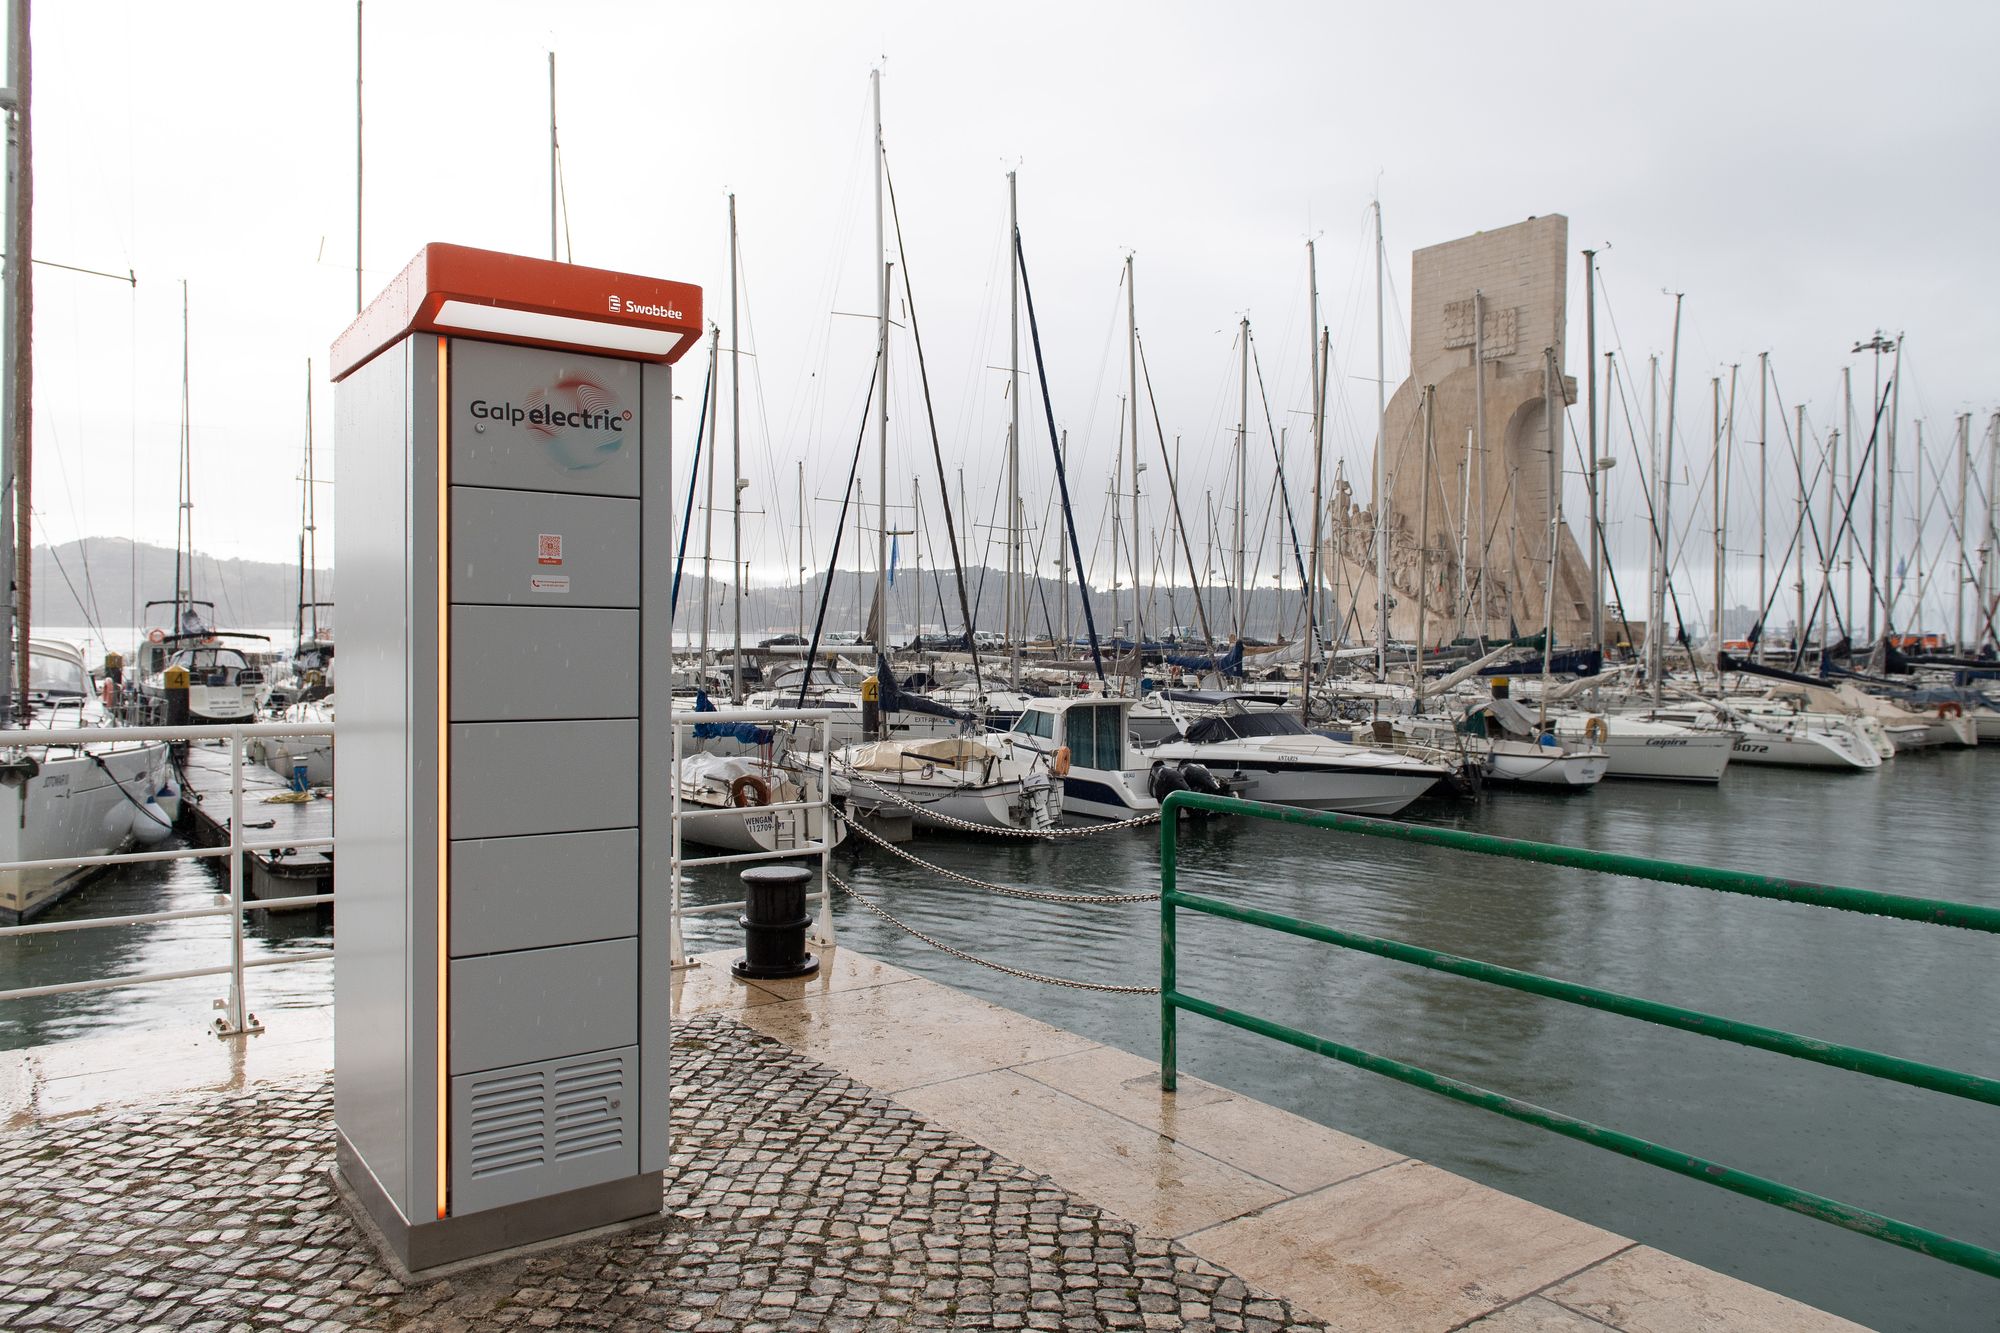 Сеть АЗС Galp запускает сервис по обмену аккумуляторов для электровелосипедов (Португалия)